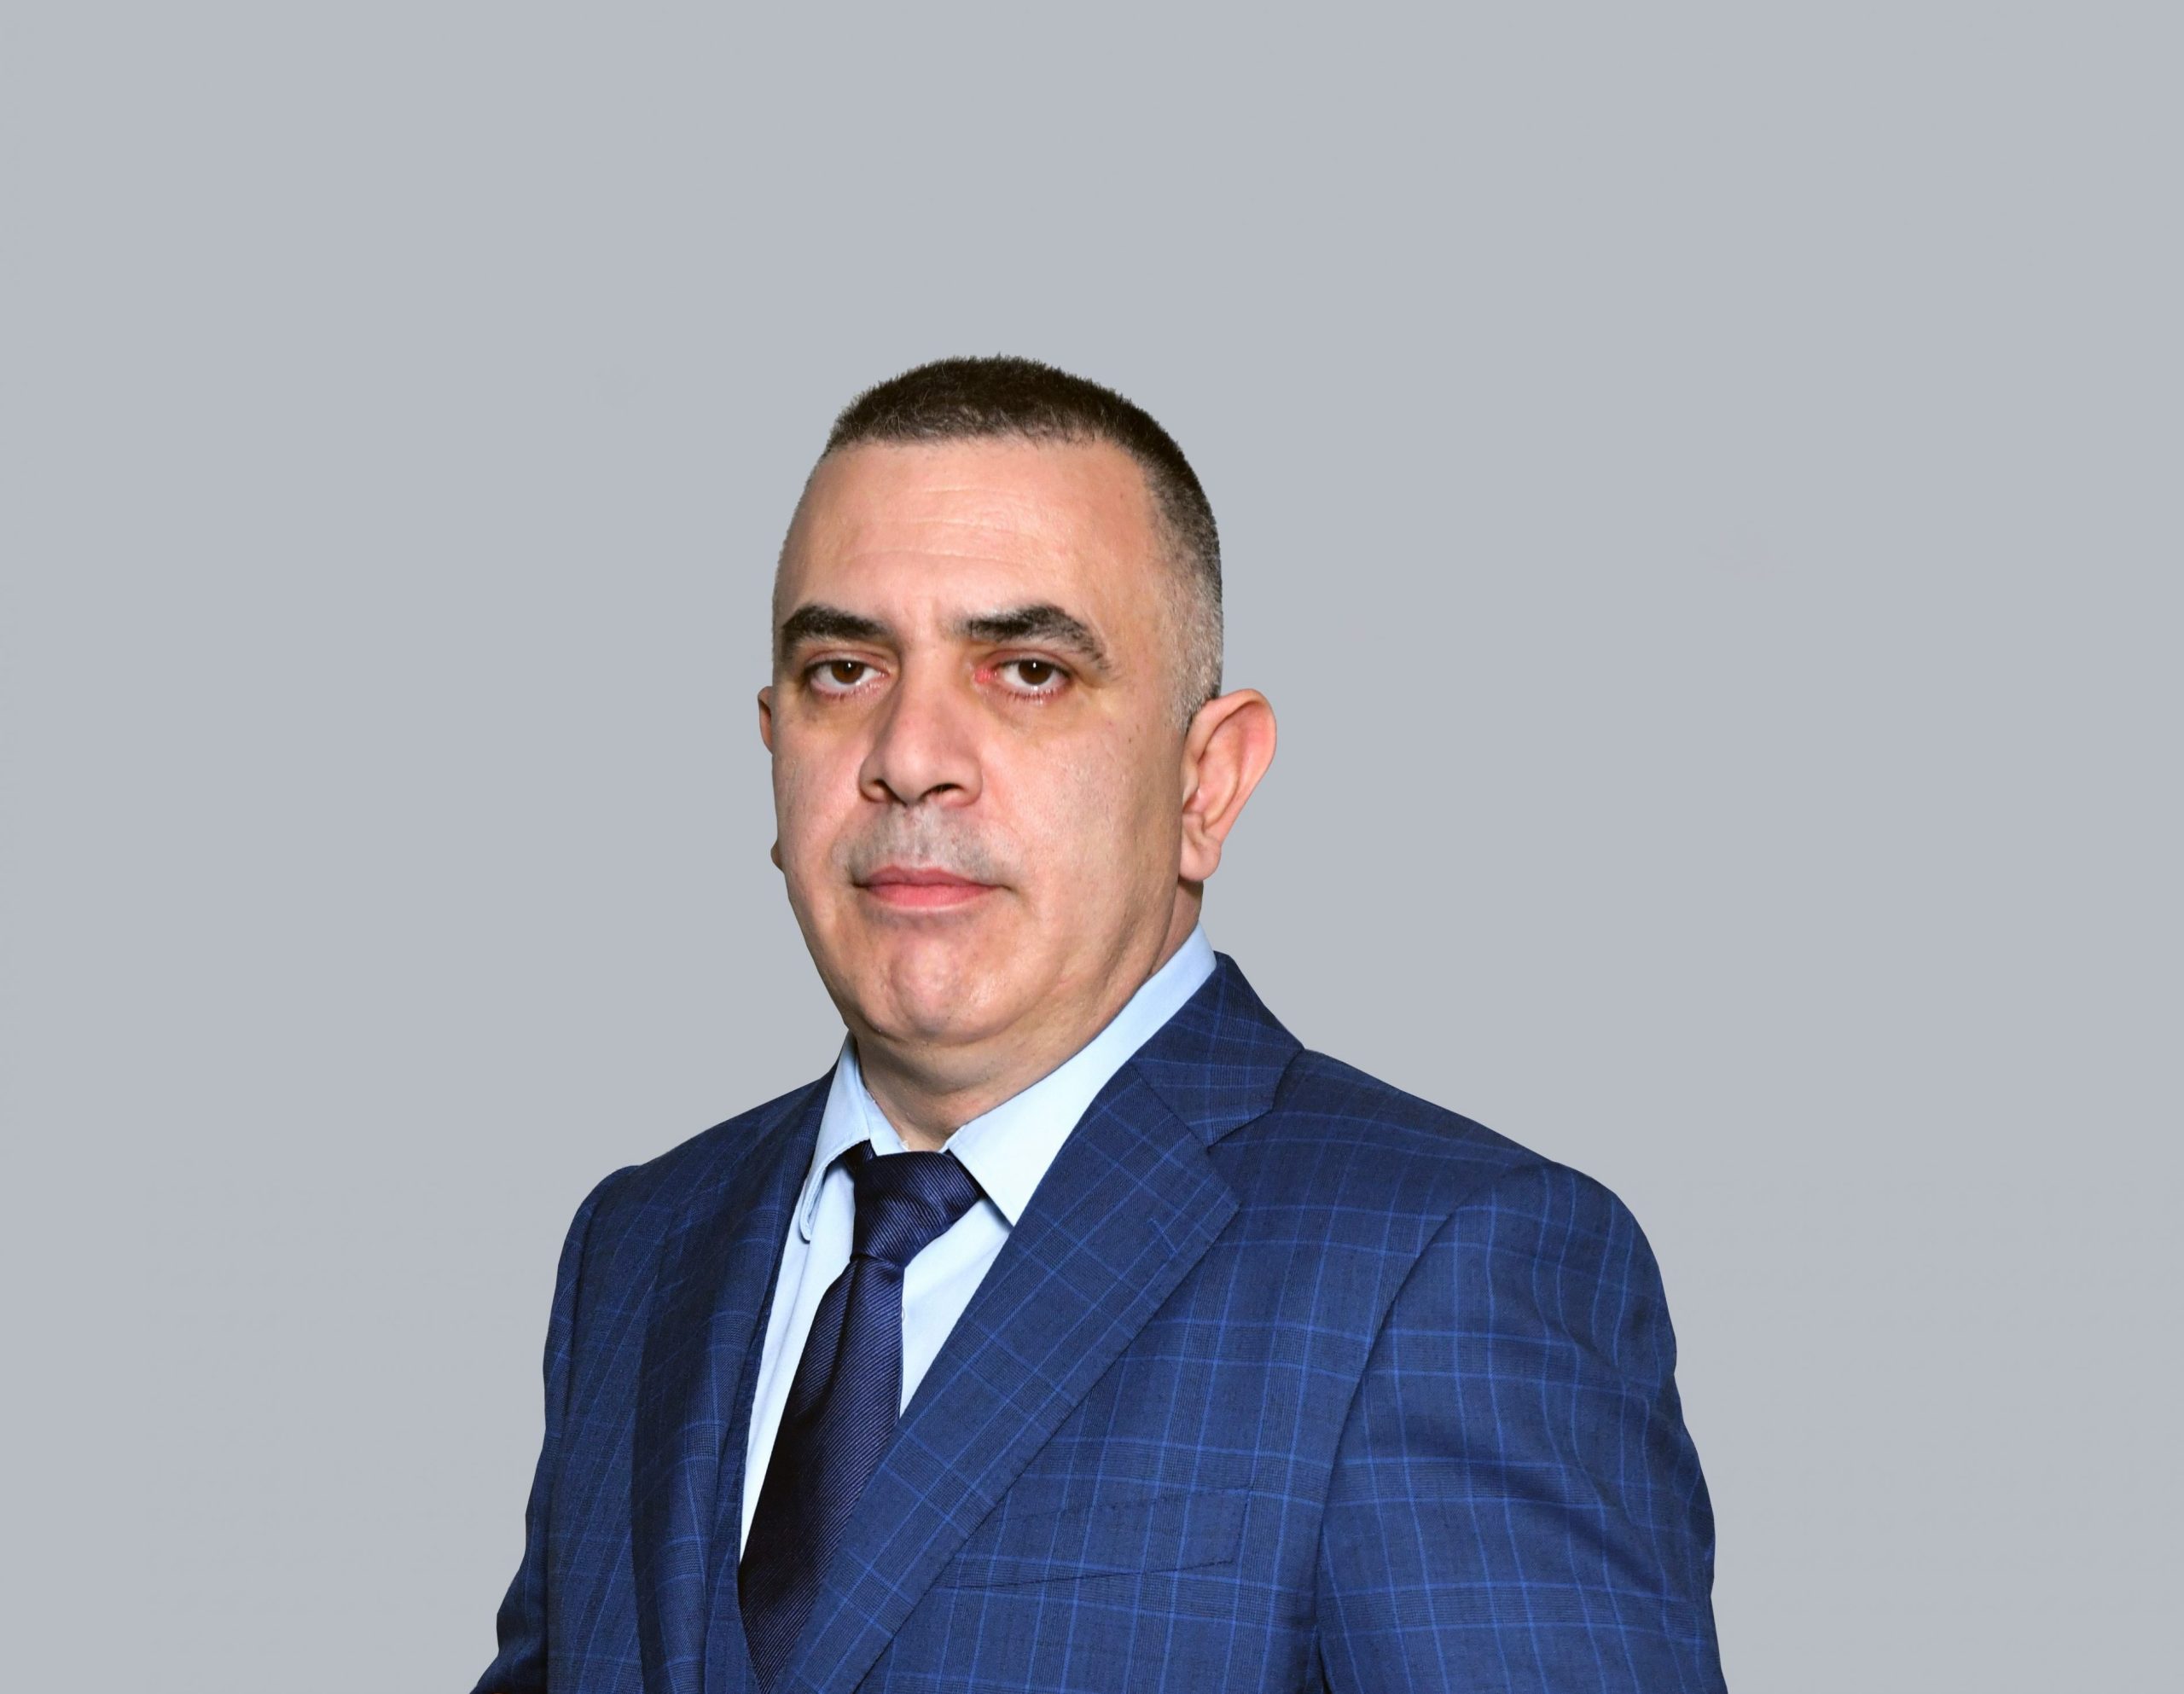 Кандидатът за трети мандат за кмет на Сливен от ГЕРБ